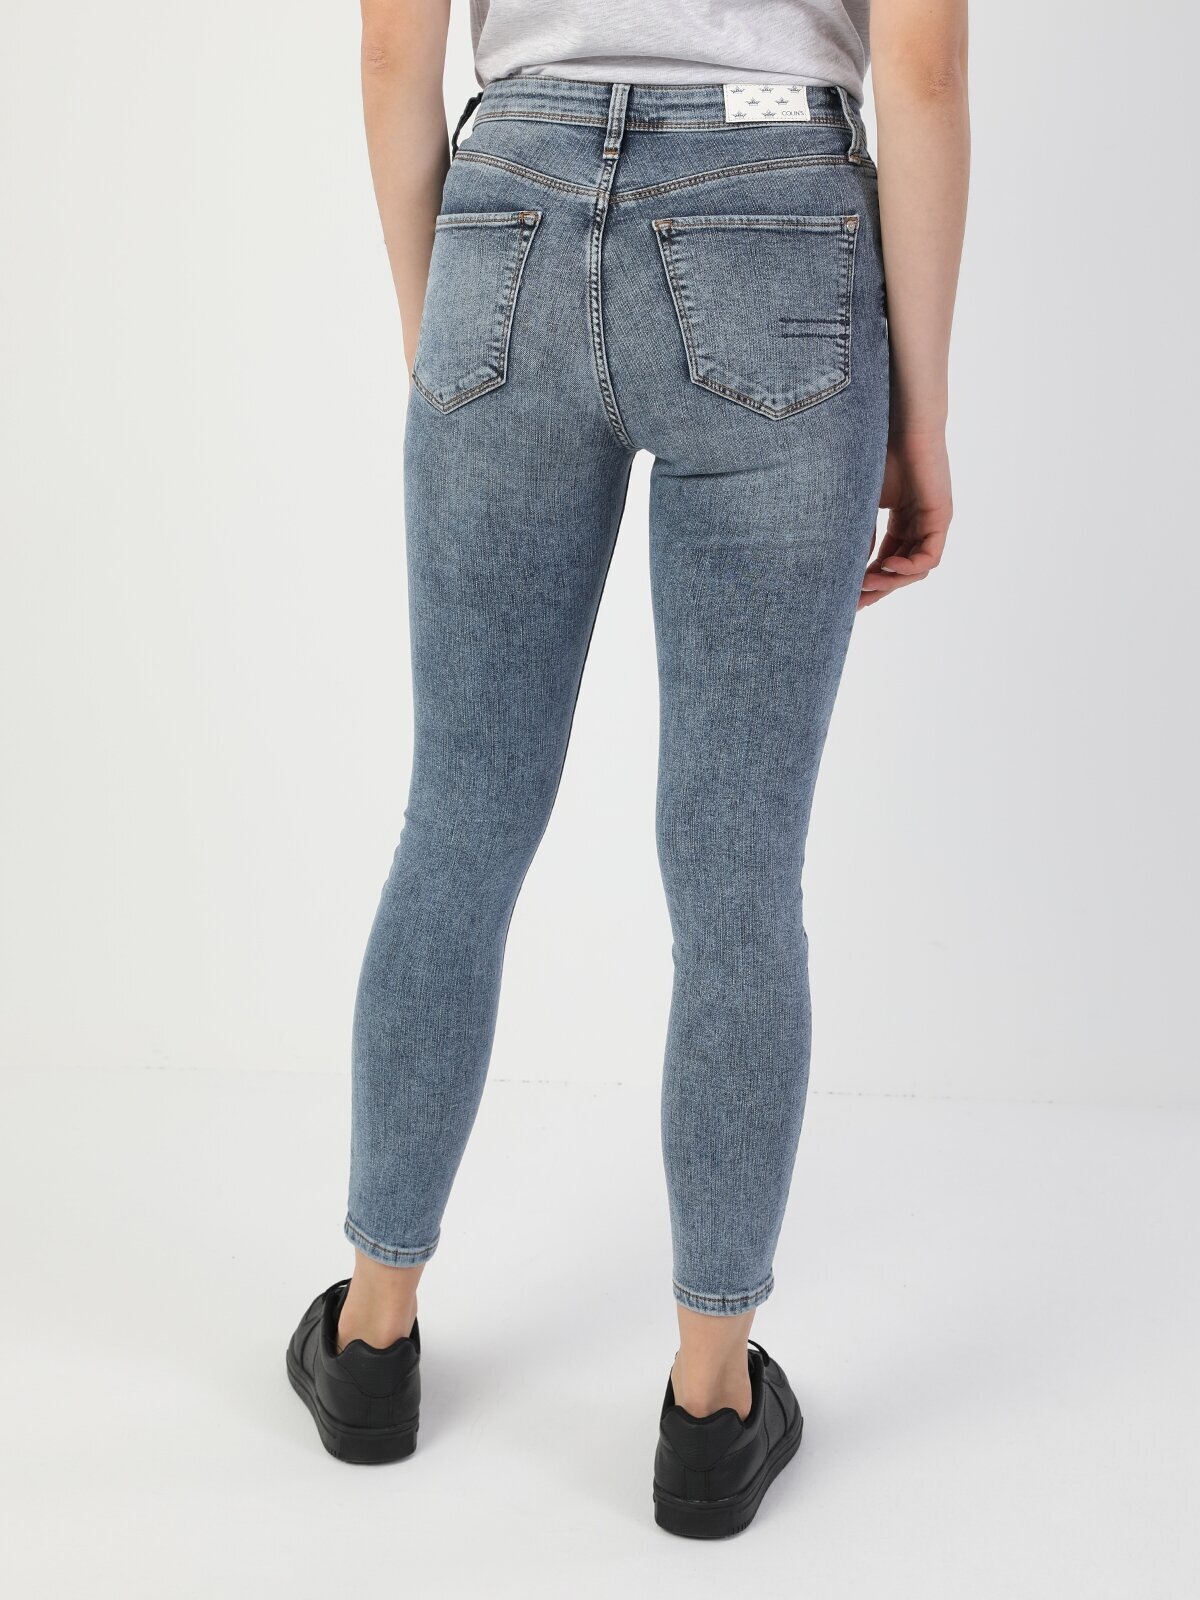 Colins 760 Dıana Yüksek Bel Dar Paça Super Slim Fit Mavi Kadın Jean Pantolon. 2